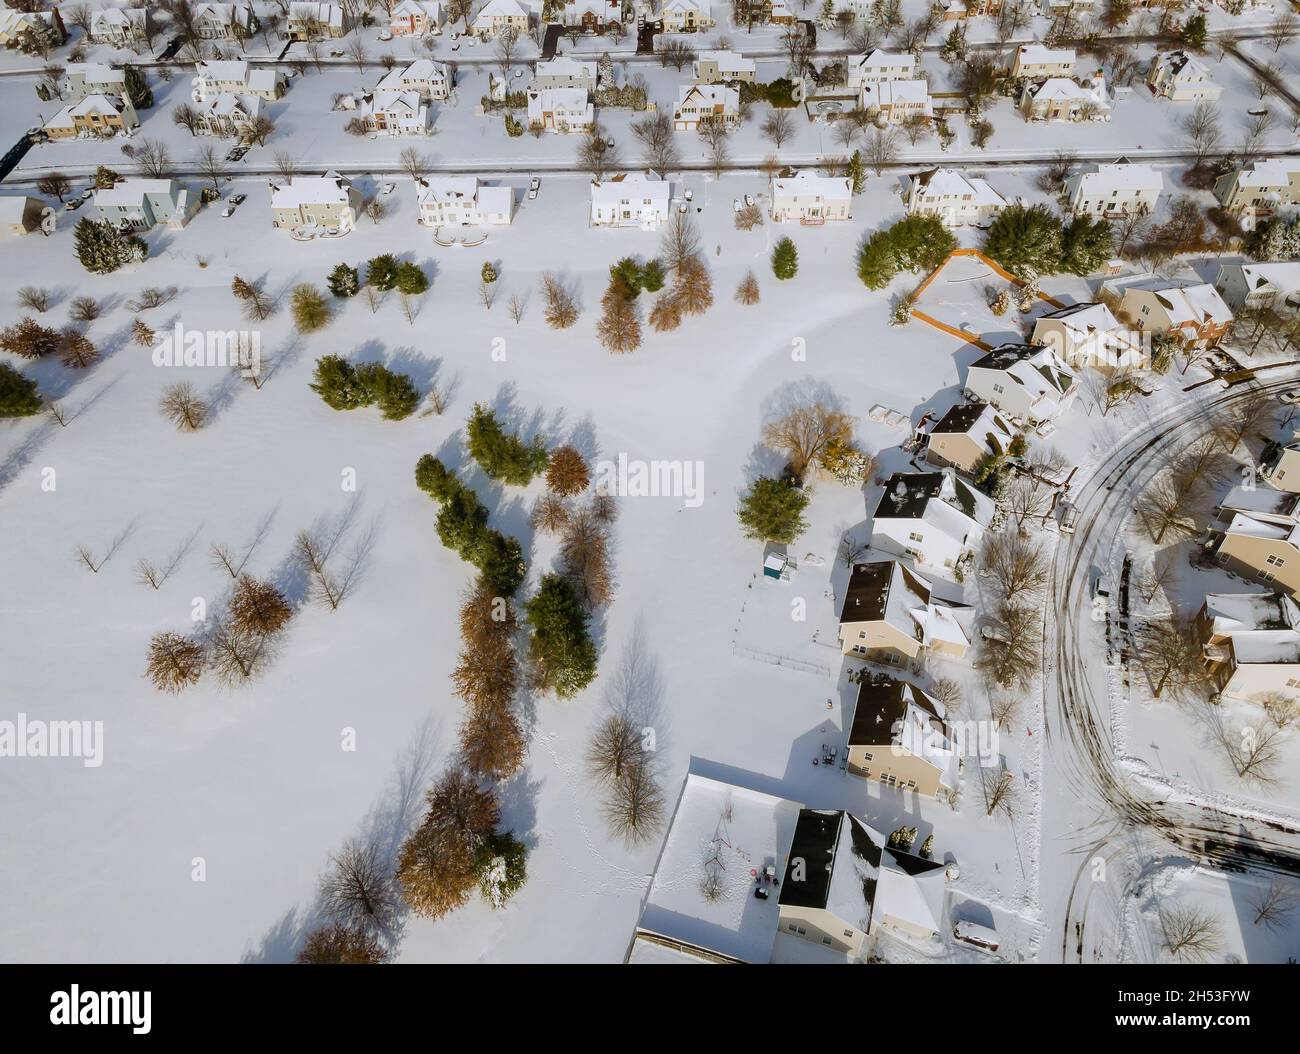 Vista panorámica del complejo residencial de invierno cubierto de nieve Foto de stock